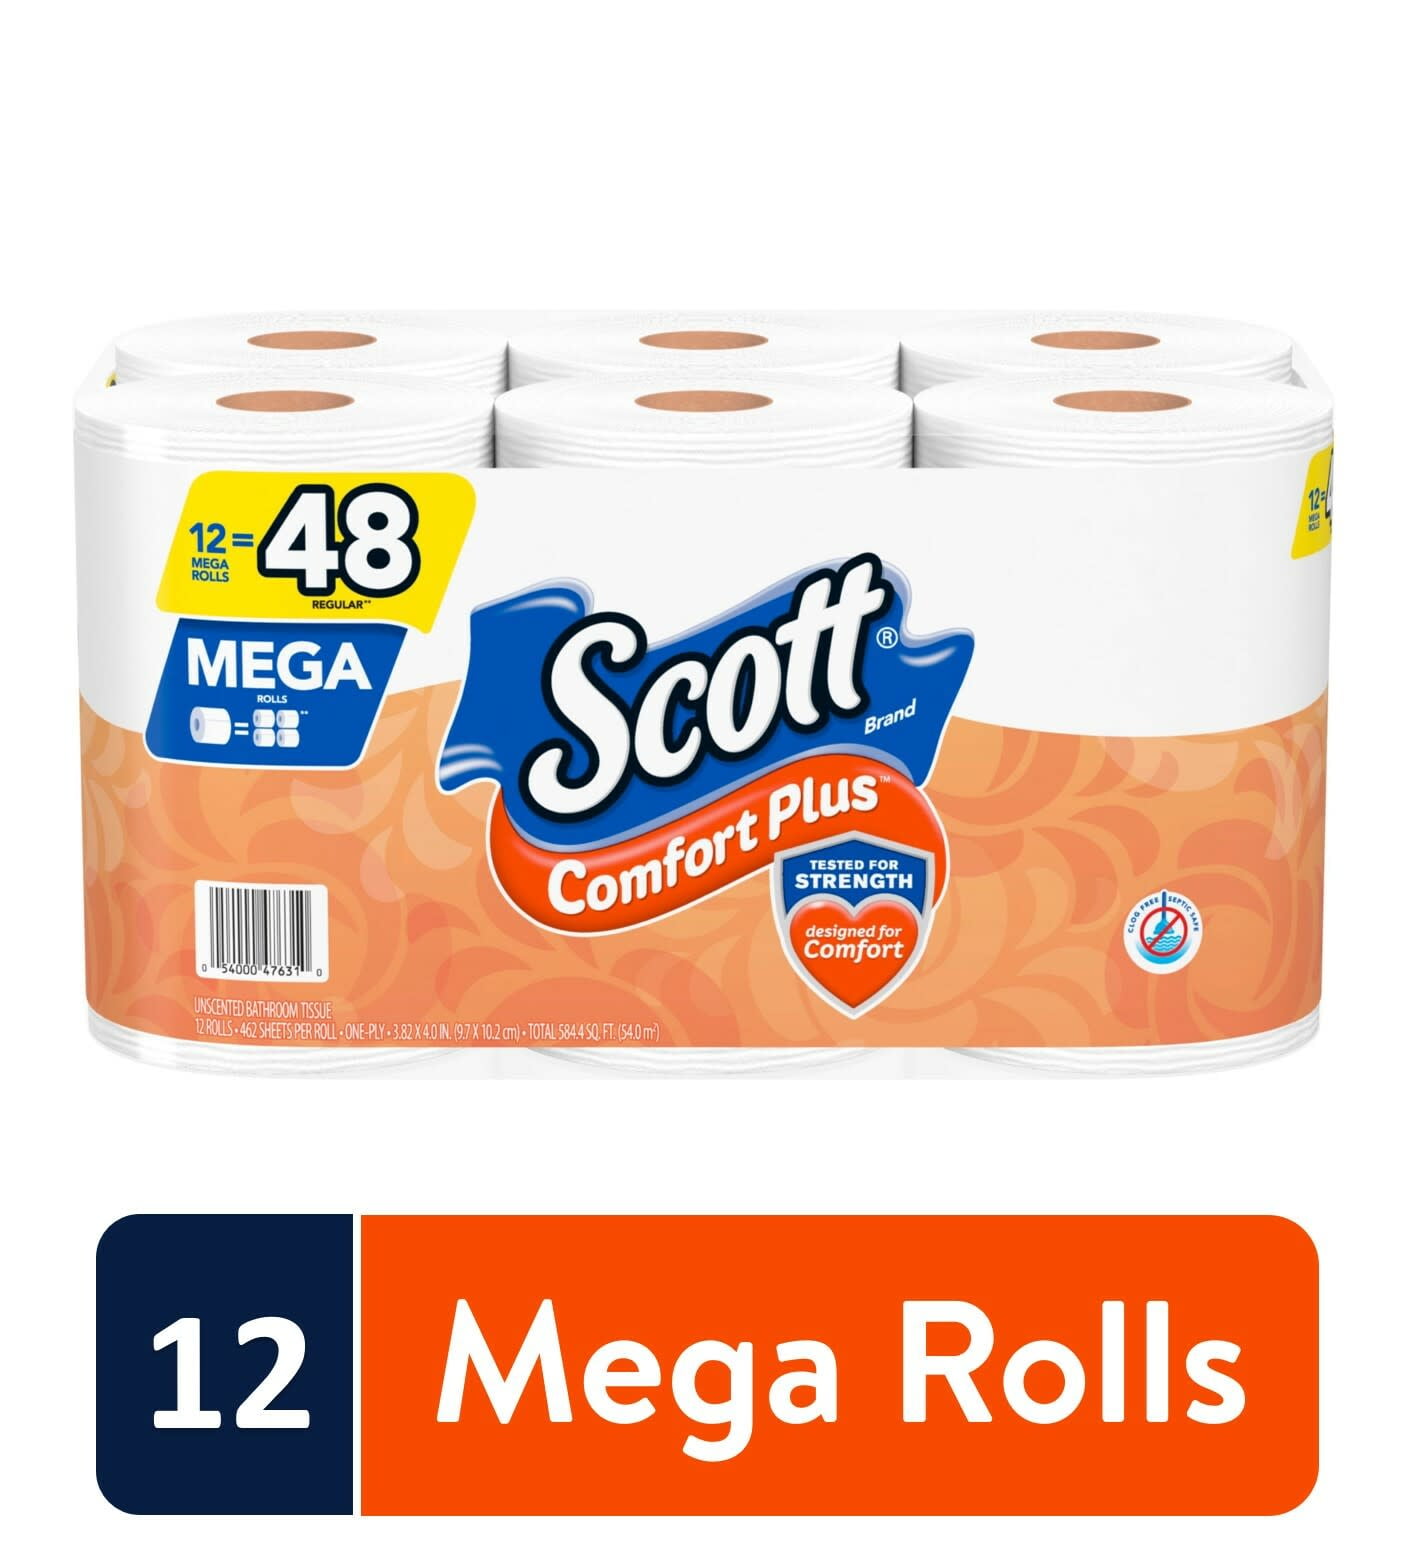 Scott ComfortPlus Toilet Paper, 12 Mega Rolls, 462 Sheets per Roll (5,544  Total) 